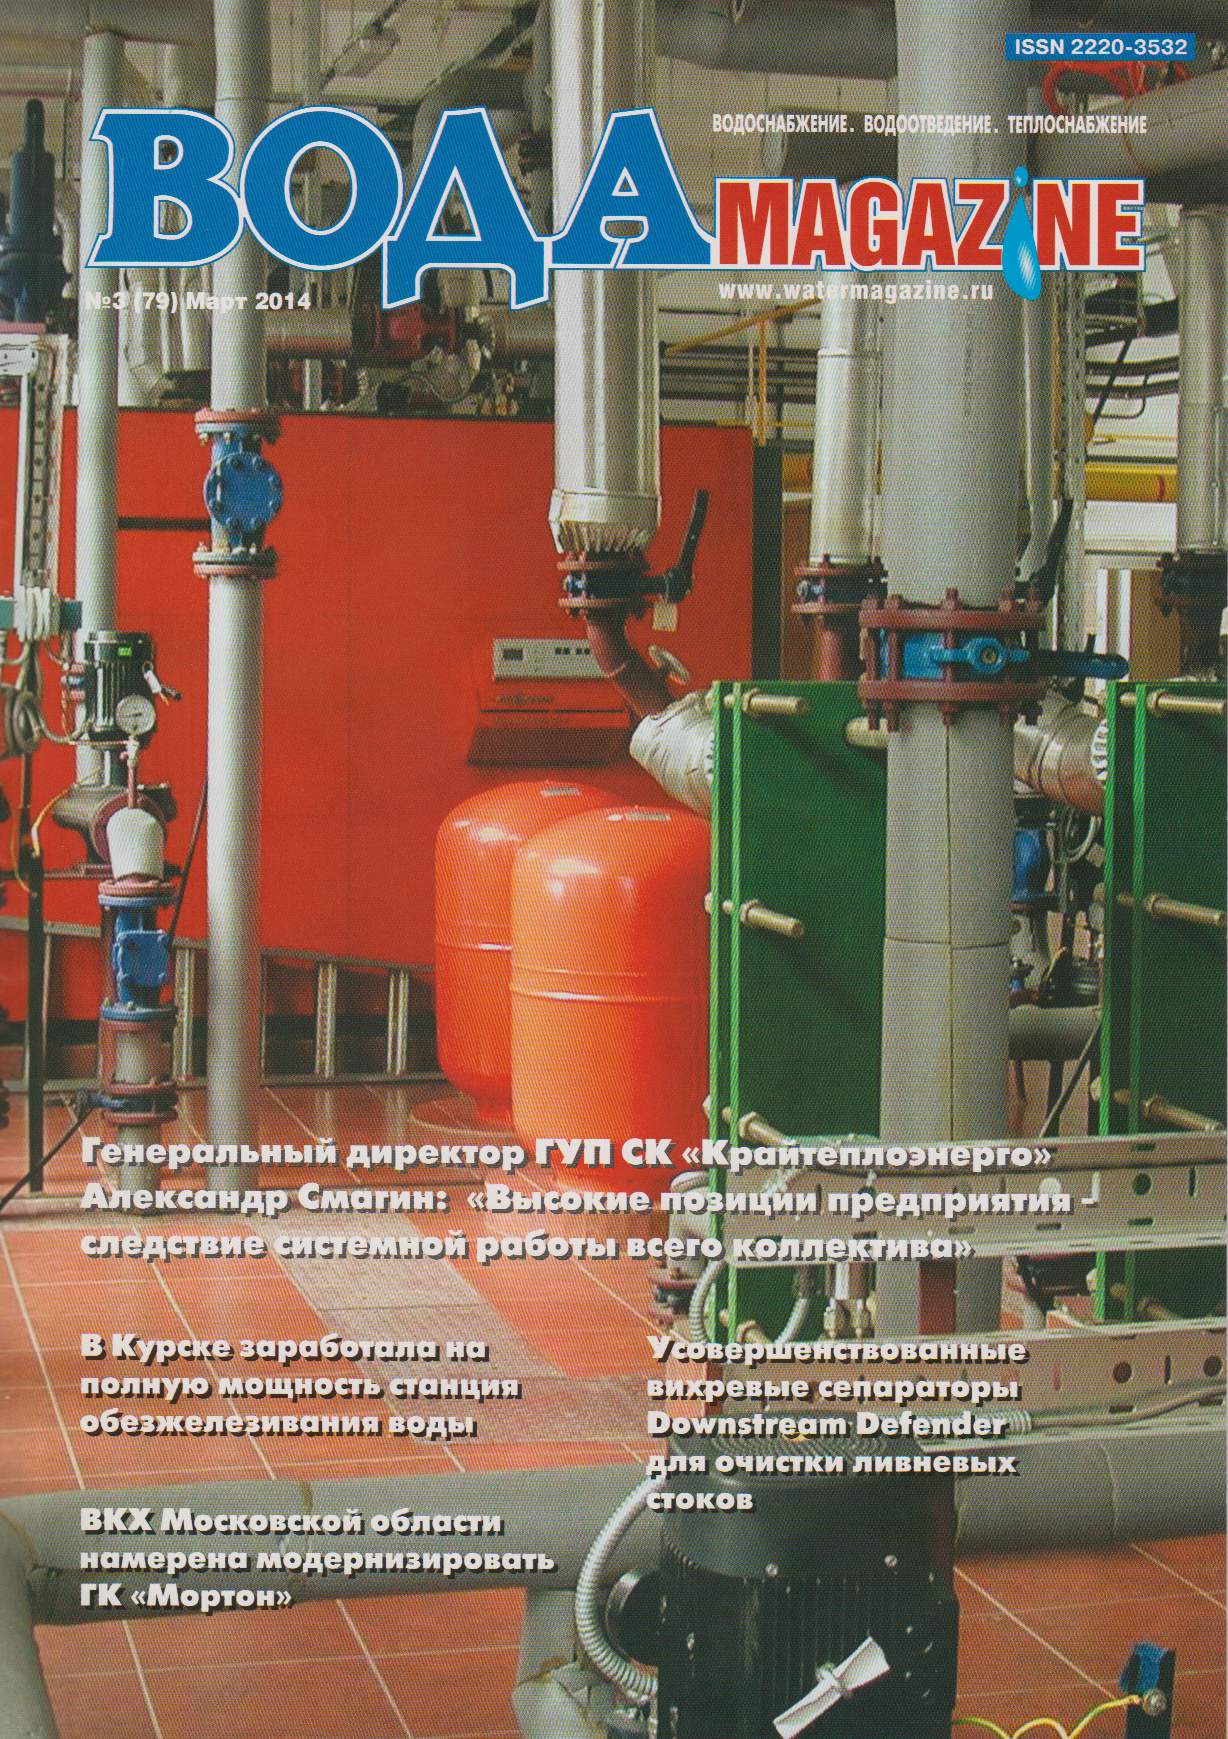 В известном отраслевом журнале опубликована информационно-методическая статья с описанием производимого ЗАО «Крисмас+» оборудования